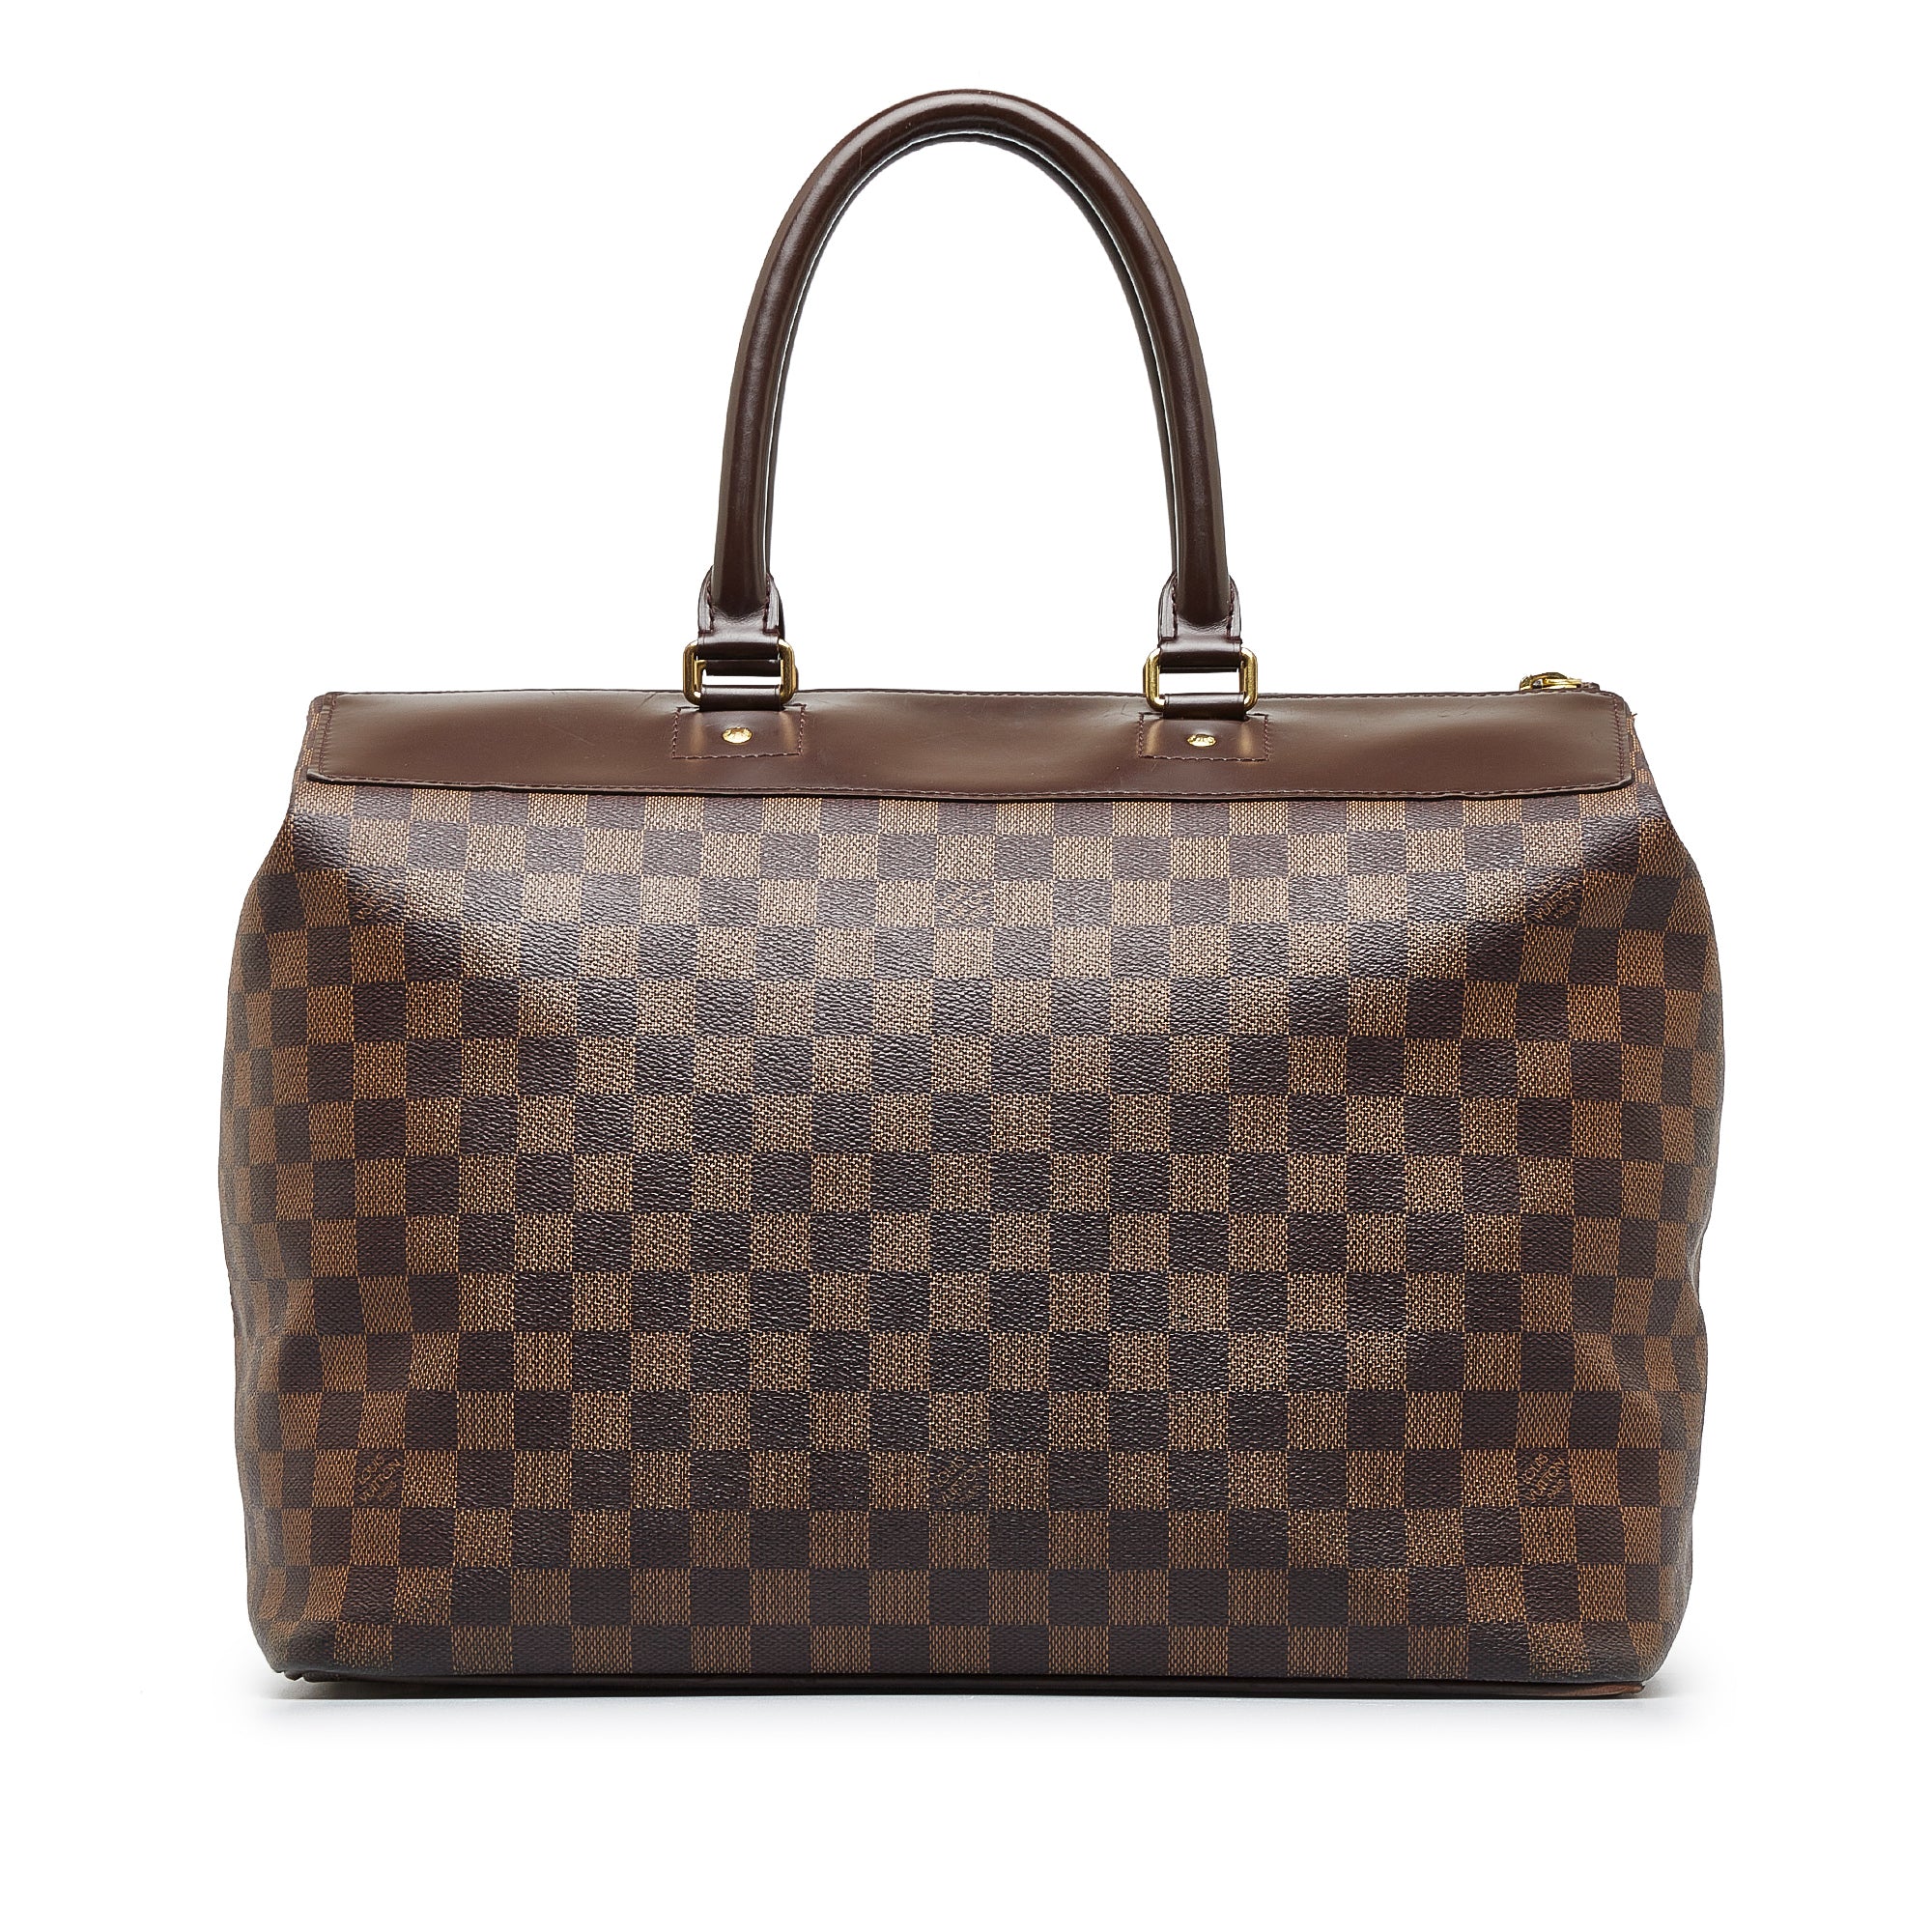 Louis Vuitton Alma PM Damier Ebene Double Top Handle Bag on SALE